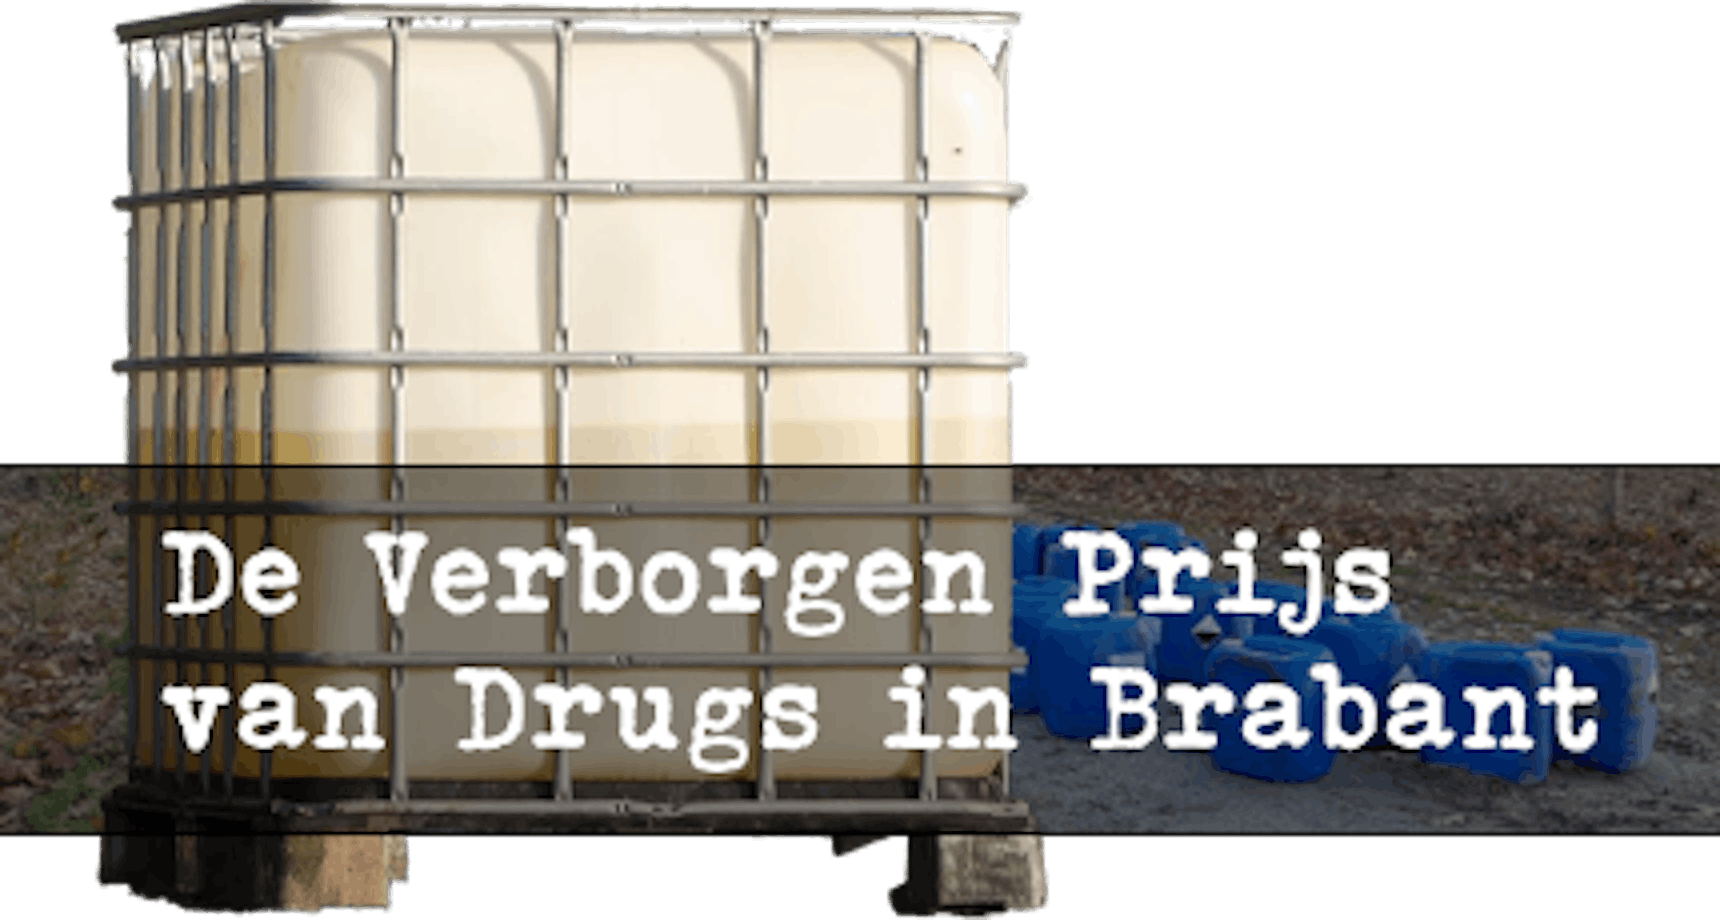 De Verborgen Prijs van Drugs in Brabant